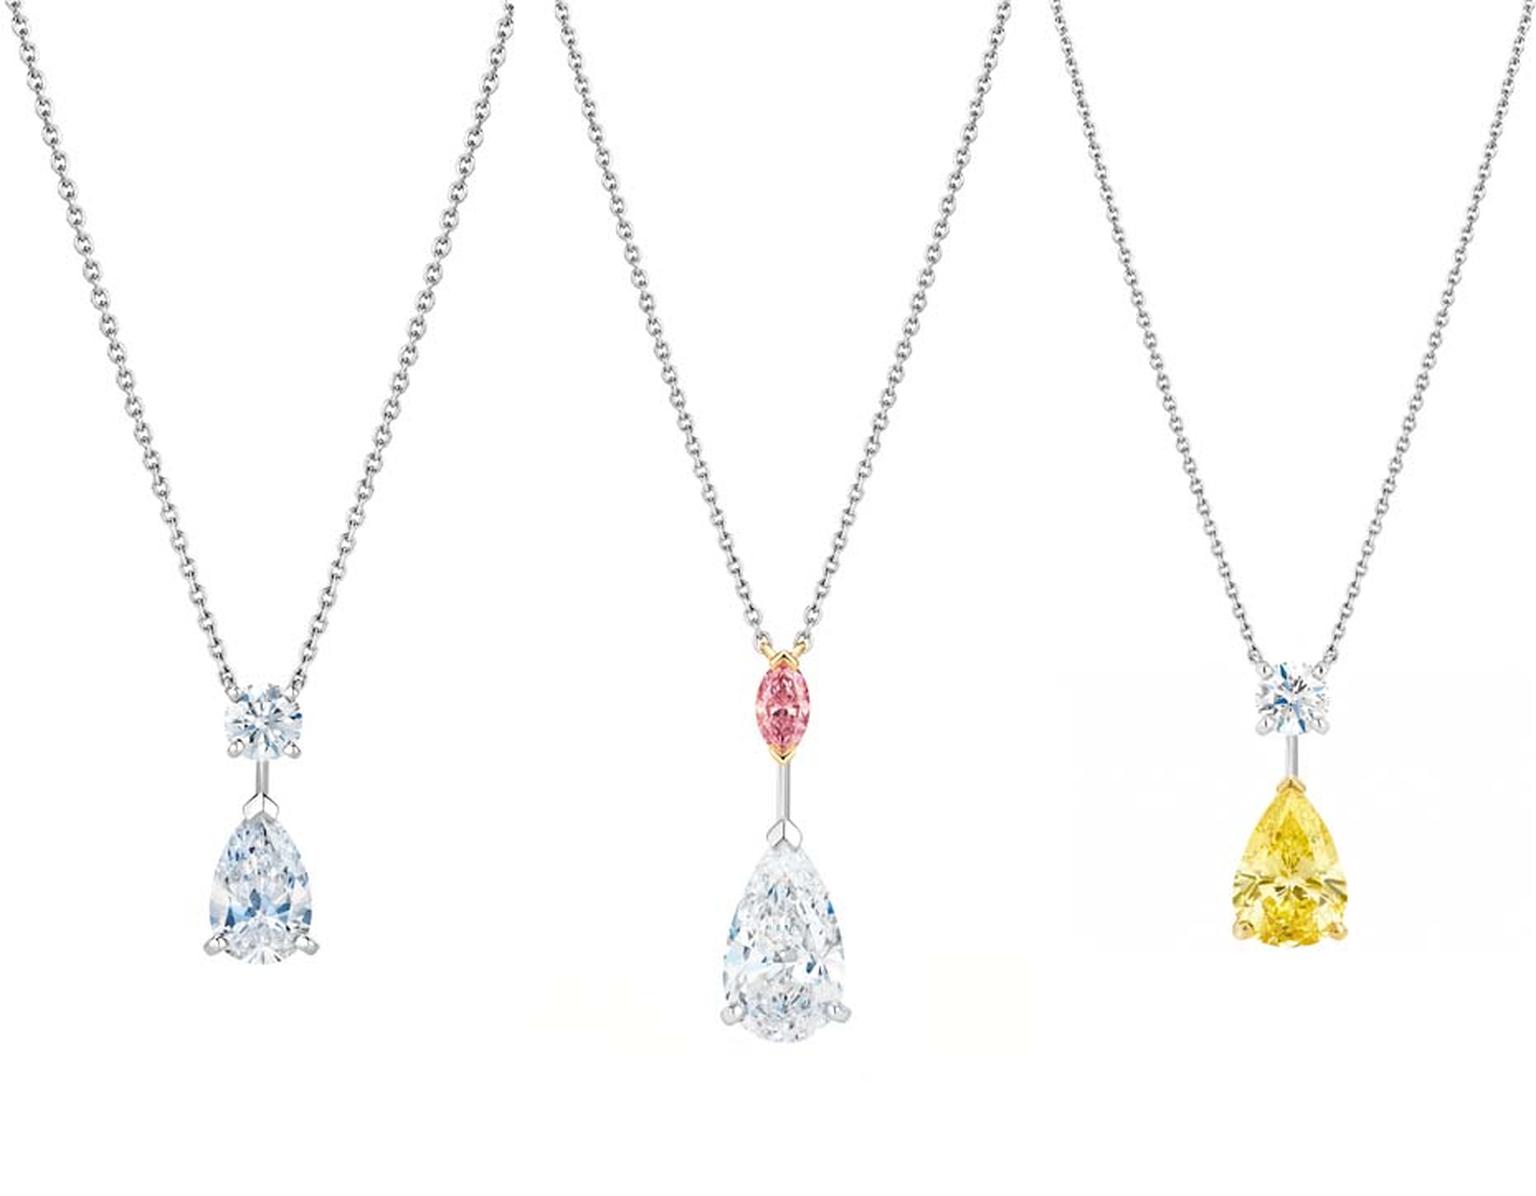 Drops of Light: De Beers' versatile new diamond jewellery